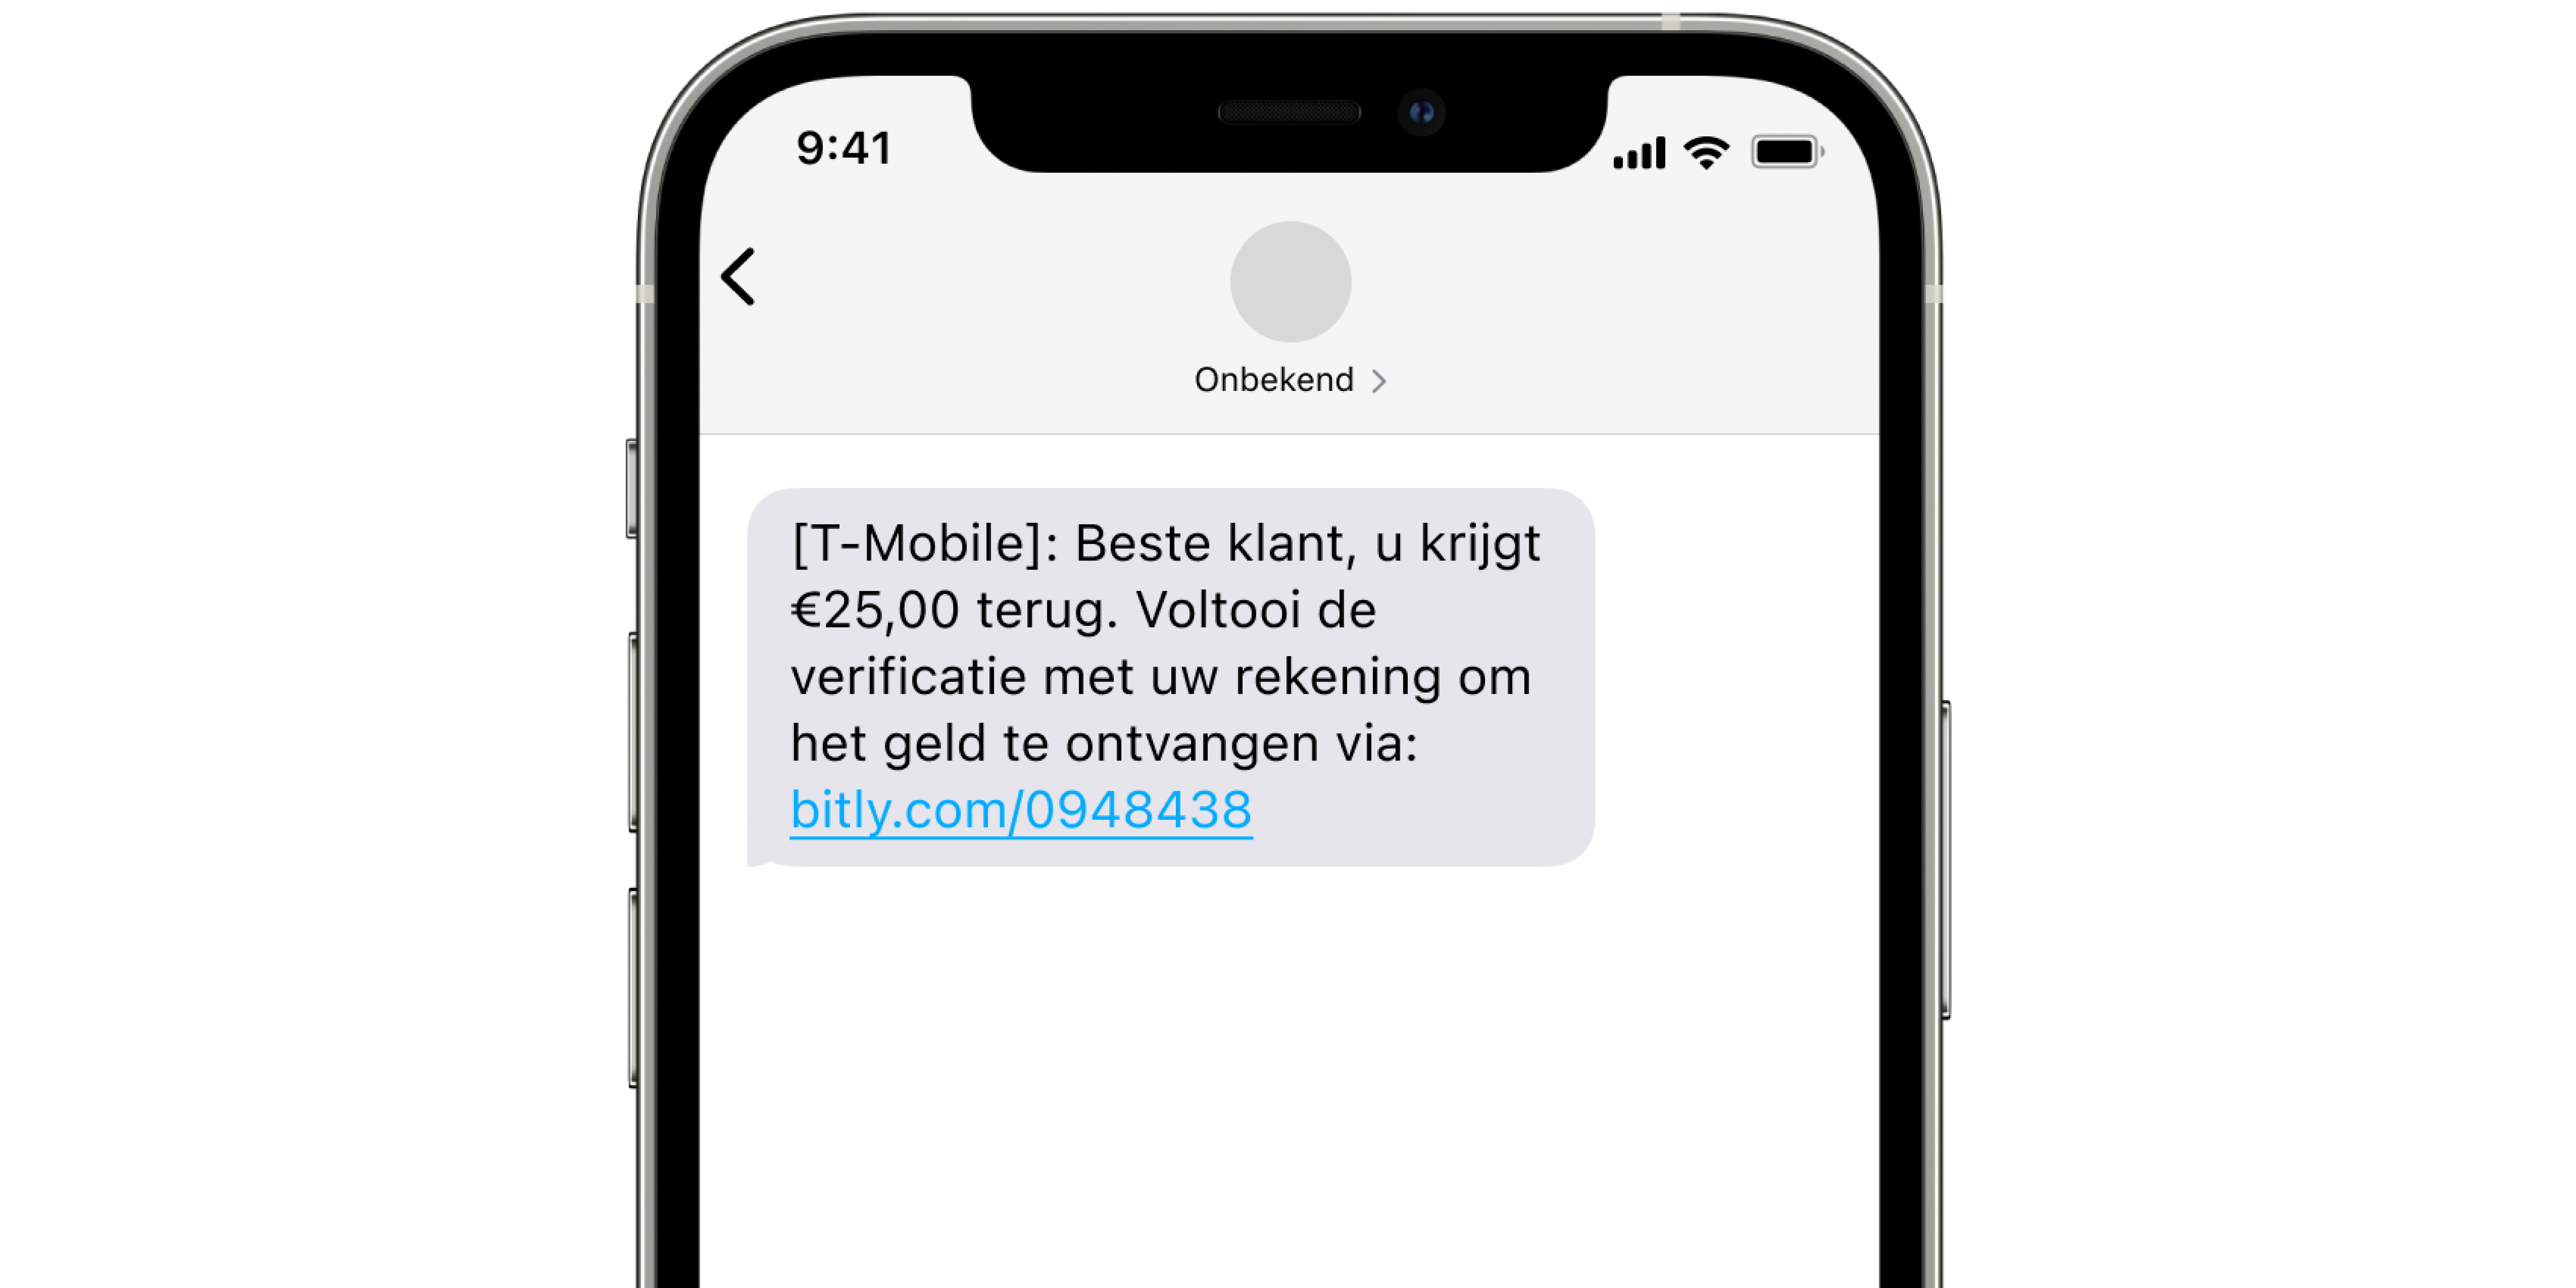 Sms beginnend met '[T-Mobile] Beste klant, u krijgt €25,00 terug' met een bitly.com-link.